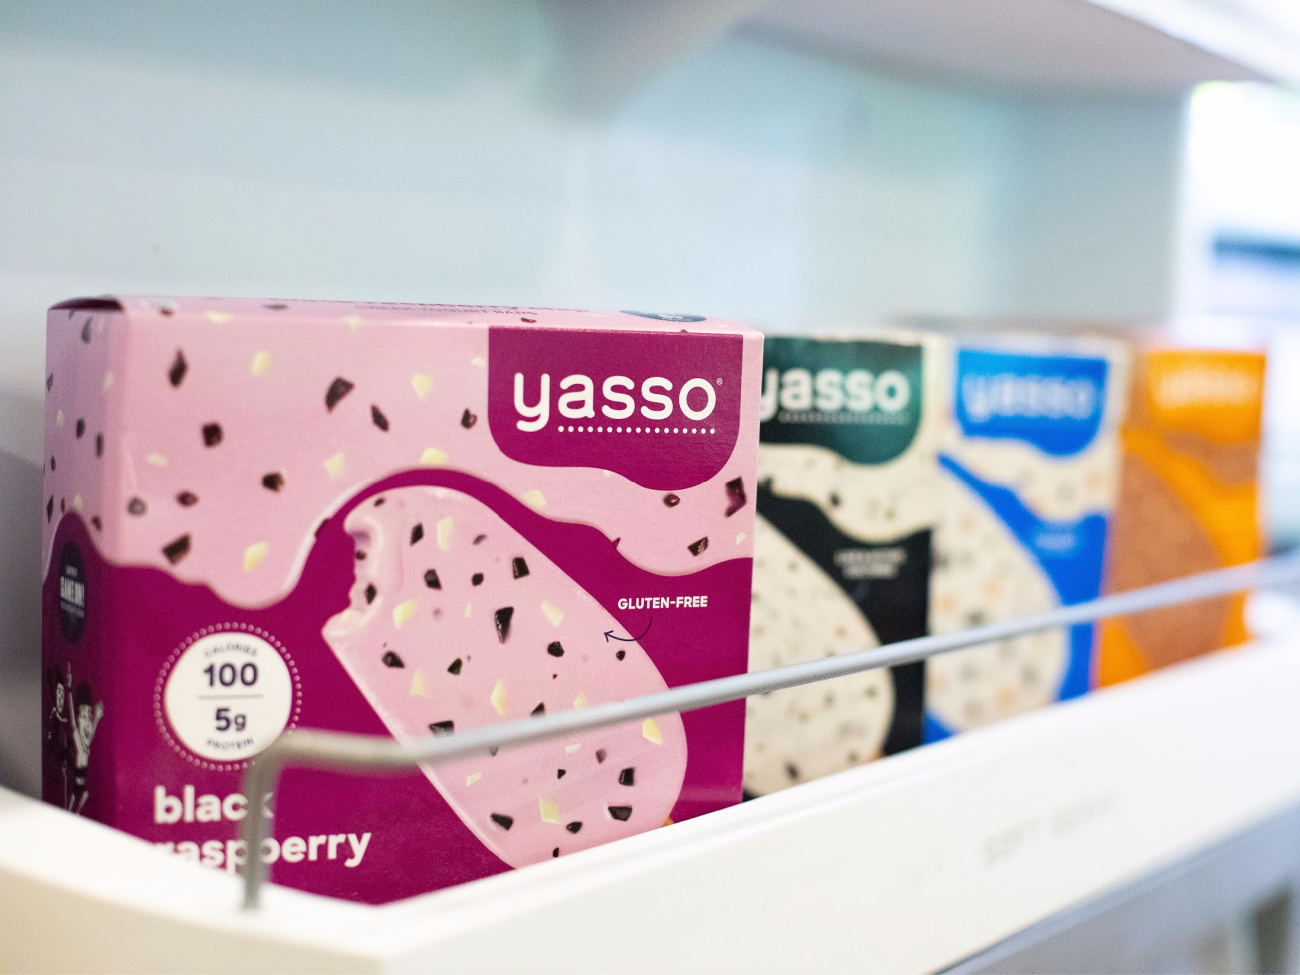 Yasso Greek Yogurt Bars Just $3.99 At Kroger